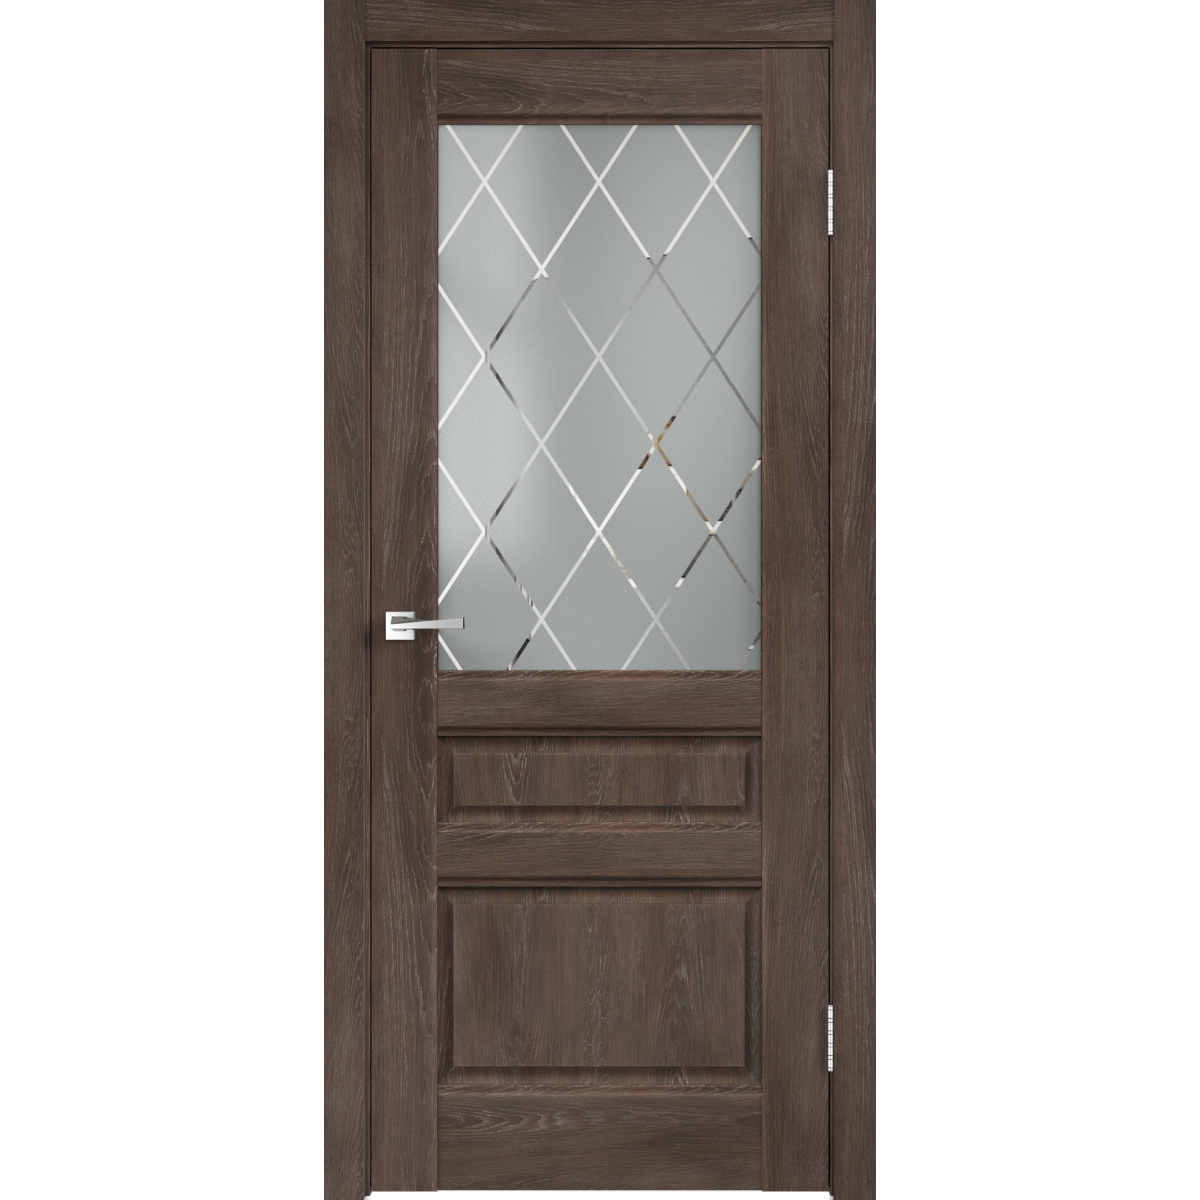 Дверь межкомнатная остеклённая «Летиция» 70x200 см, ПВХ, цвет дуб корица, с фурнитурой